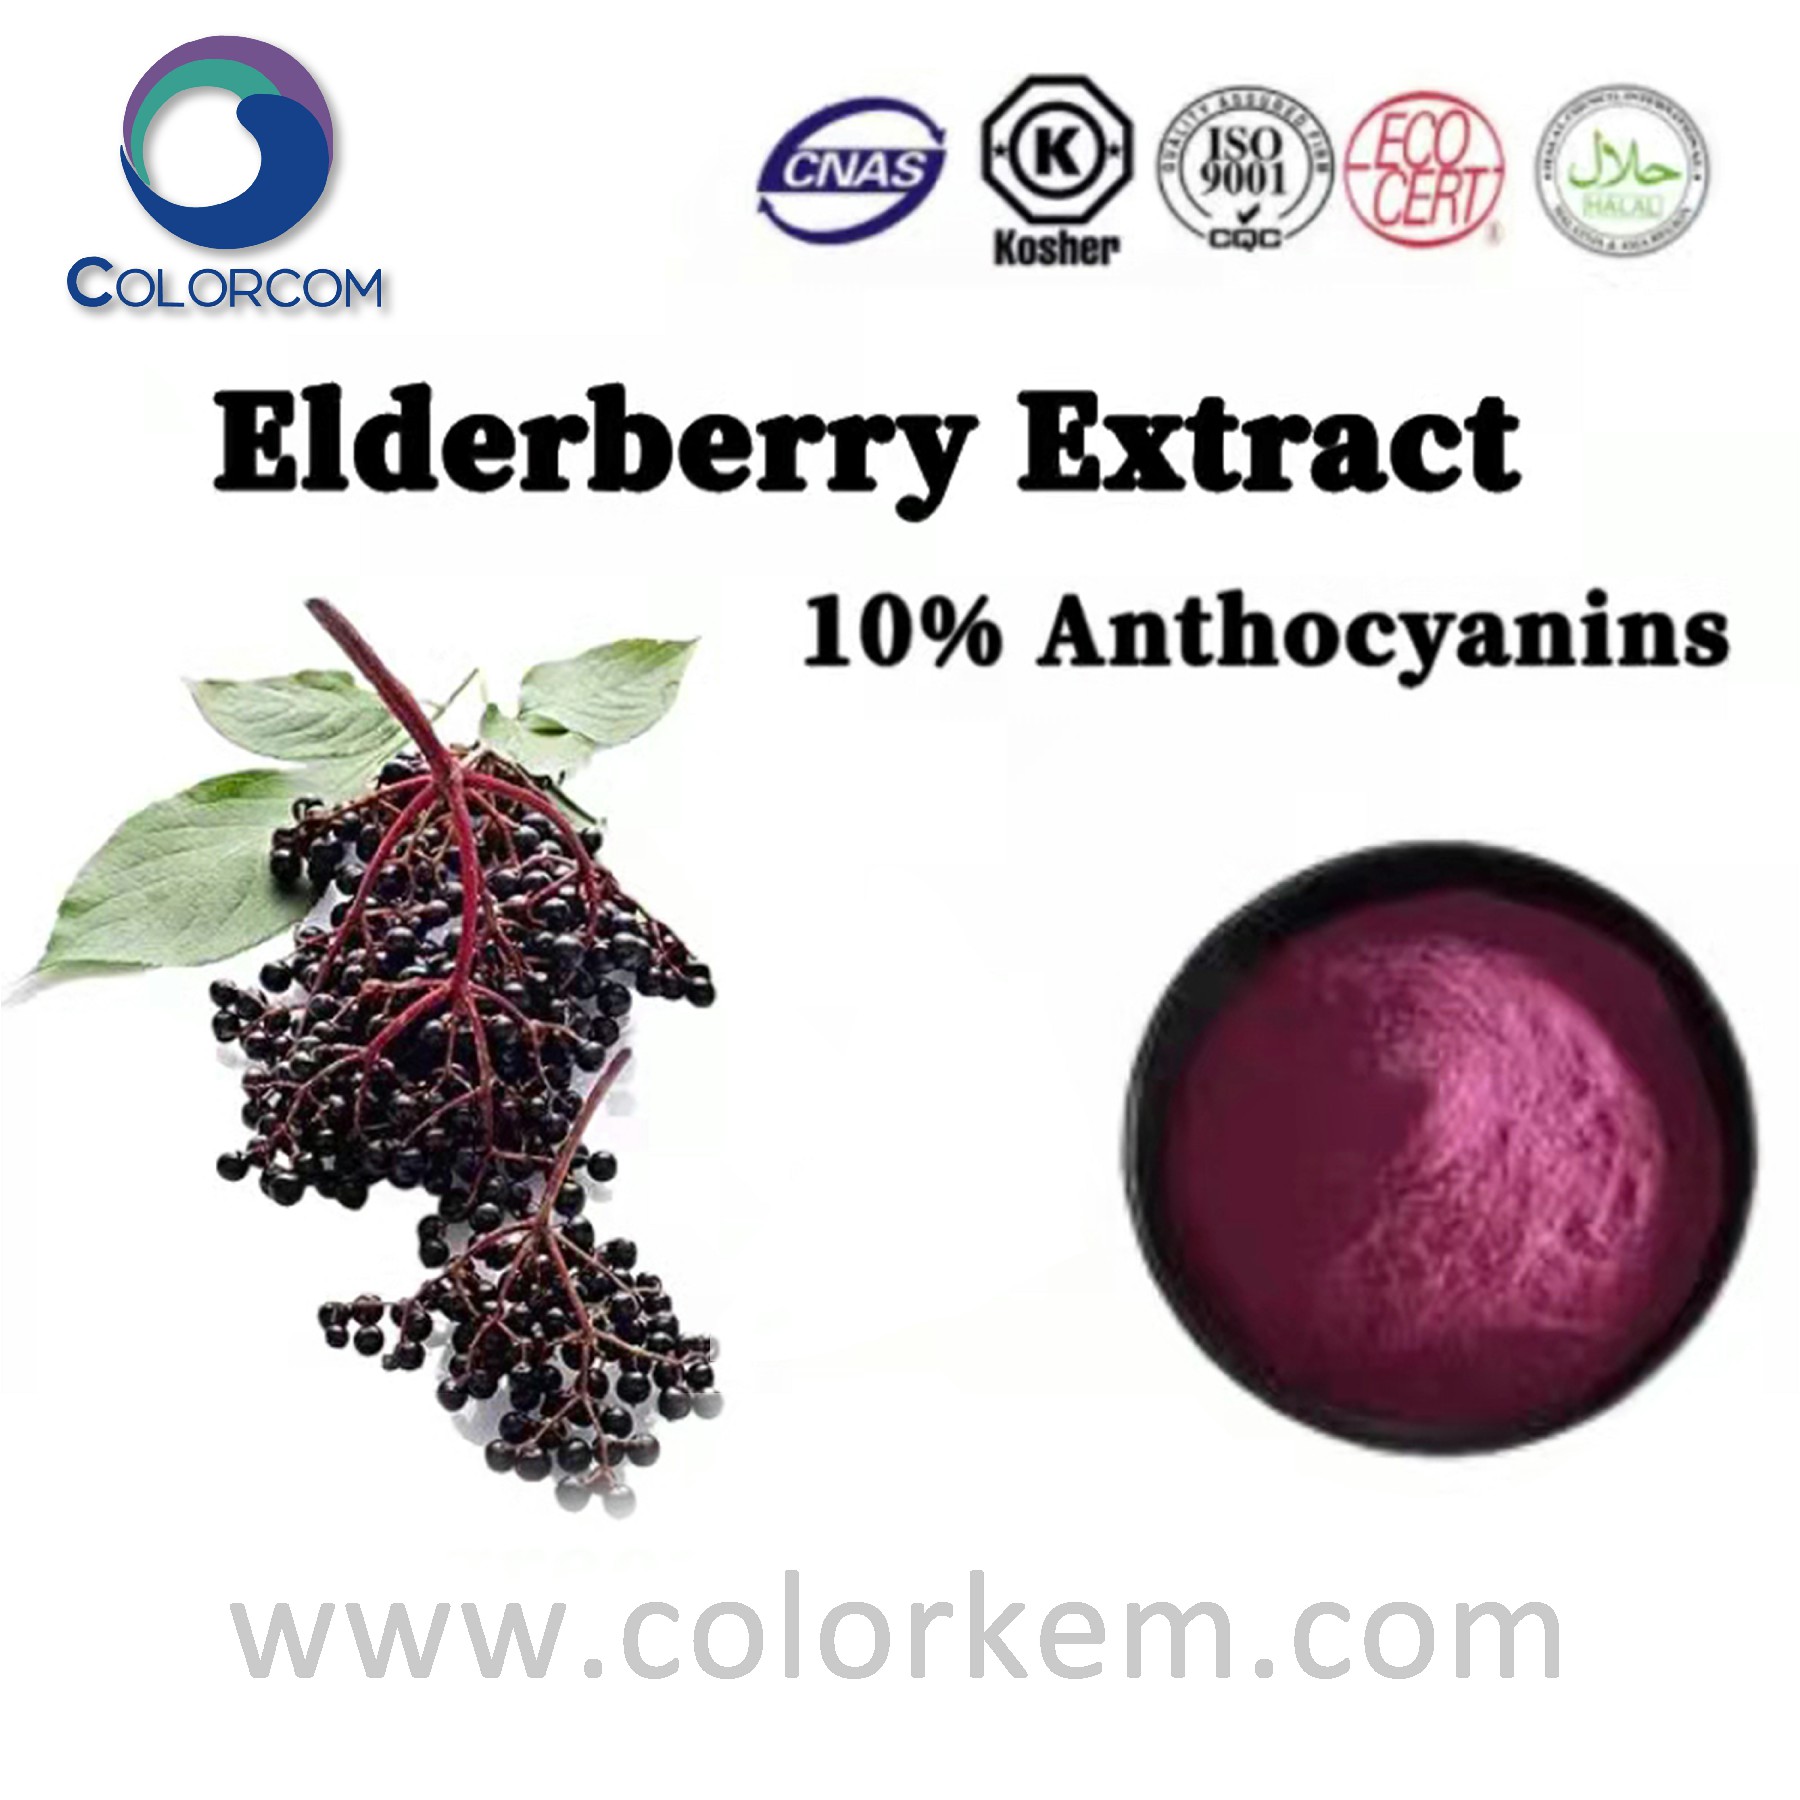 Elderberry Extract 10  Anthocyanins